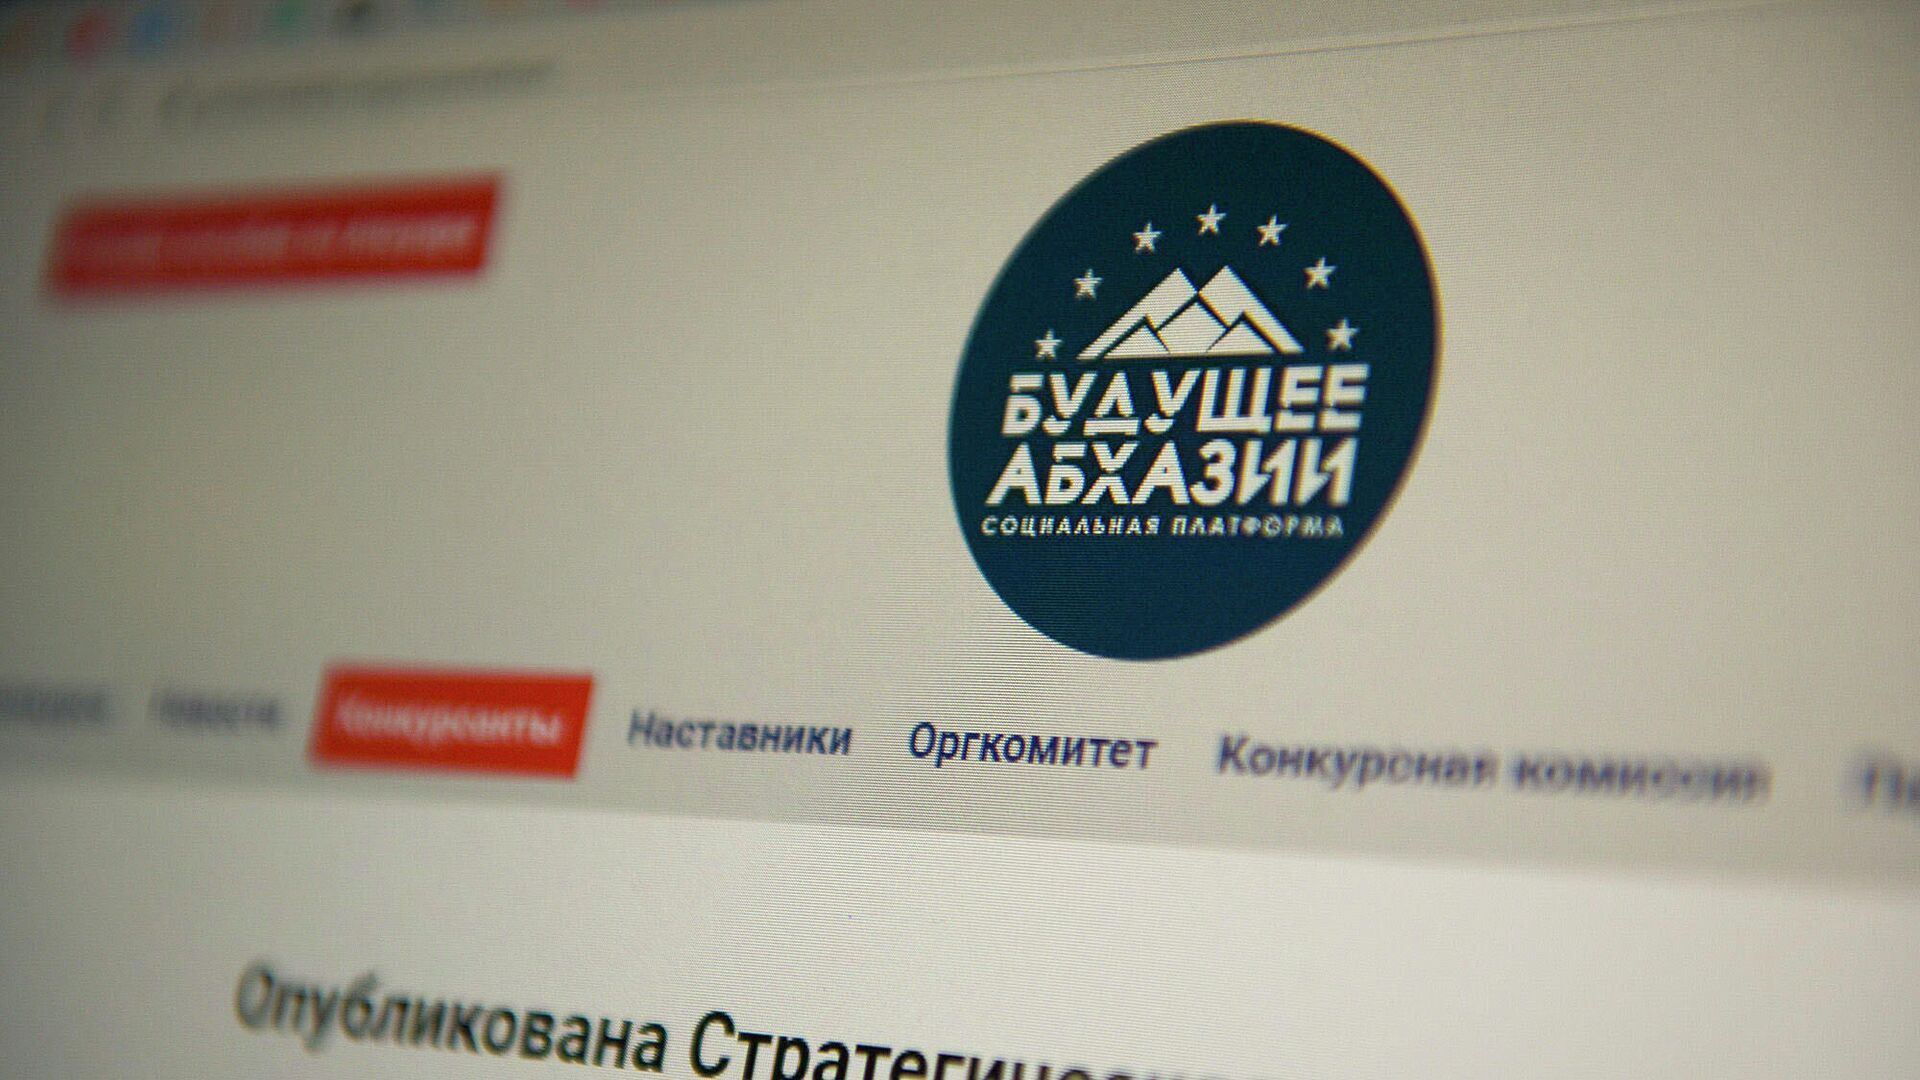 Программа реформ Будущее Абхазии была разработана финалистами конкурса Гордость Абхазии - Sputnik Абхазия, 1920, 28.05.2021